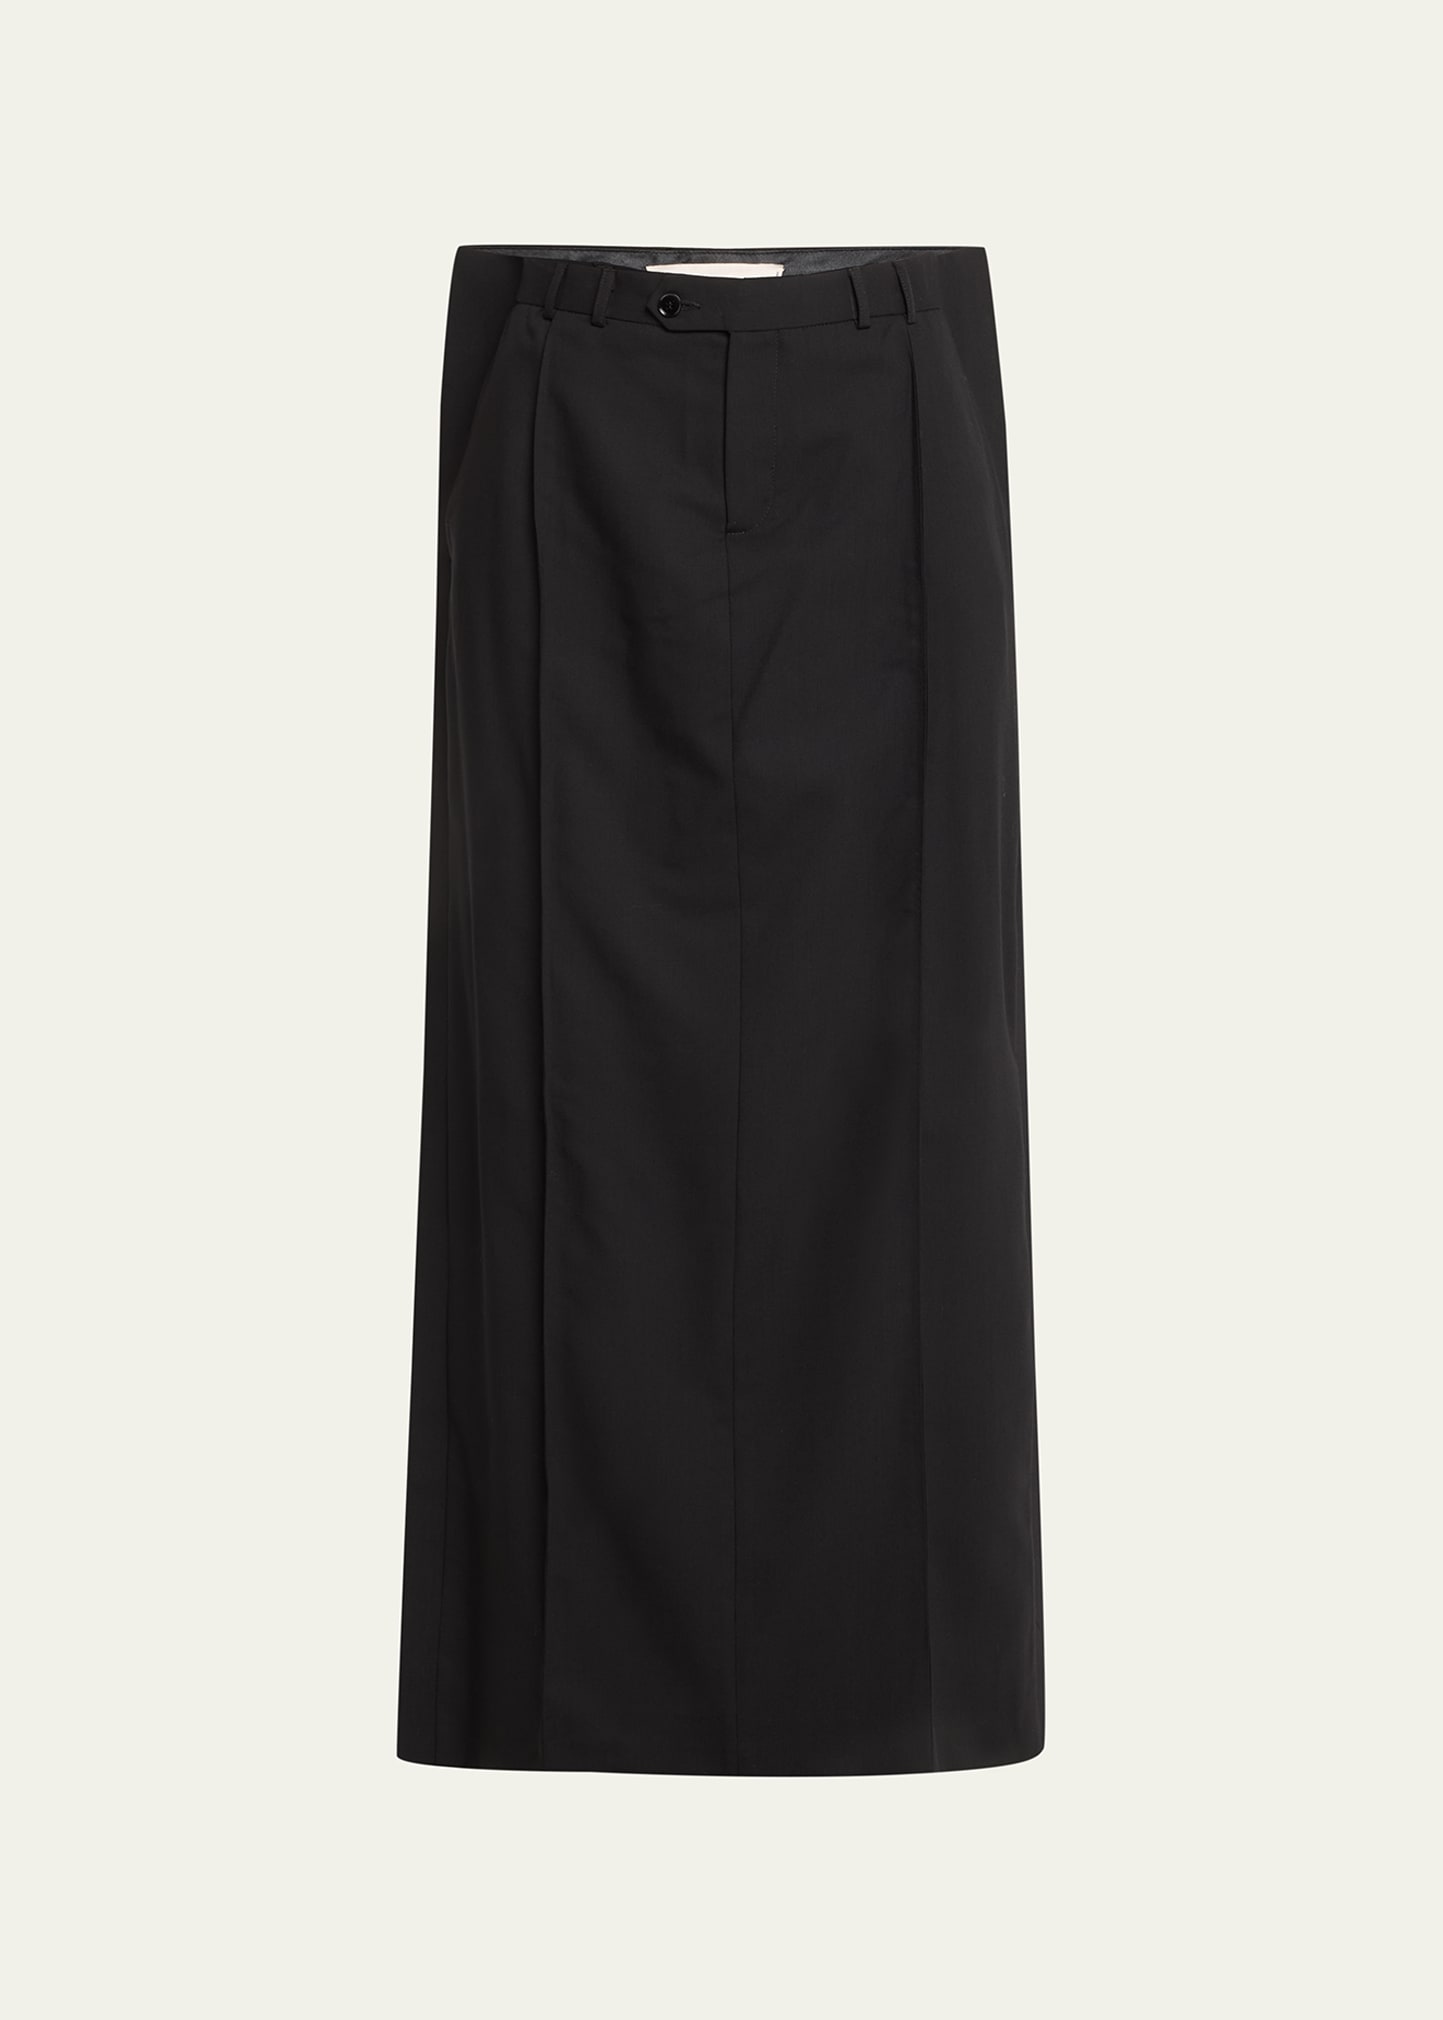 Bettter Long Side Ribbed Wool Skirt In Black